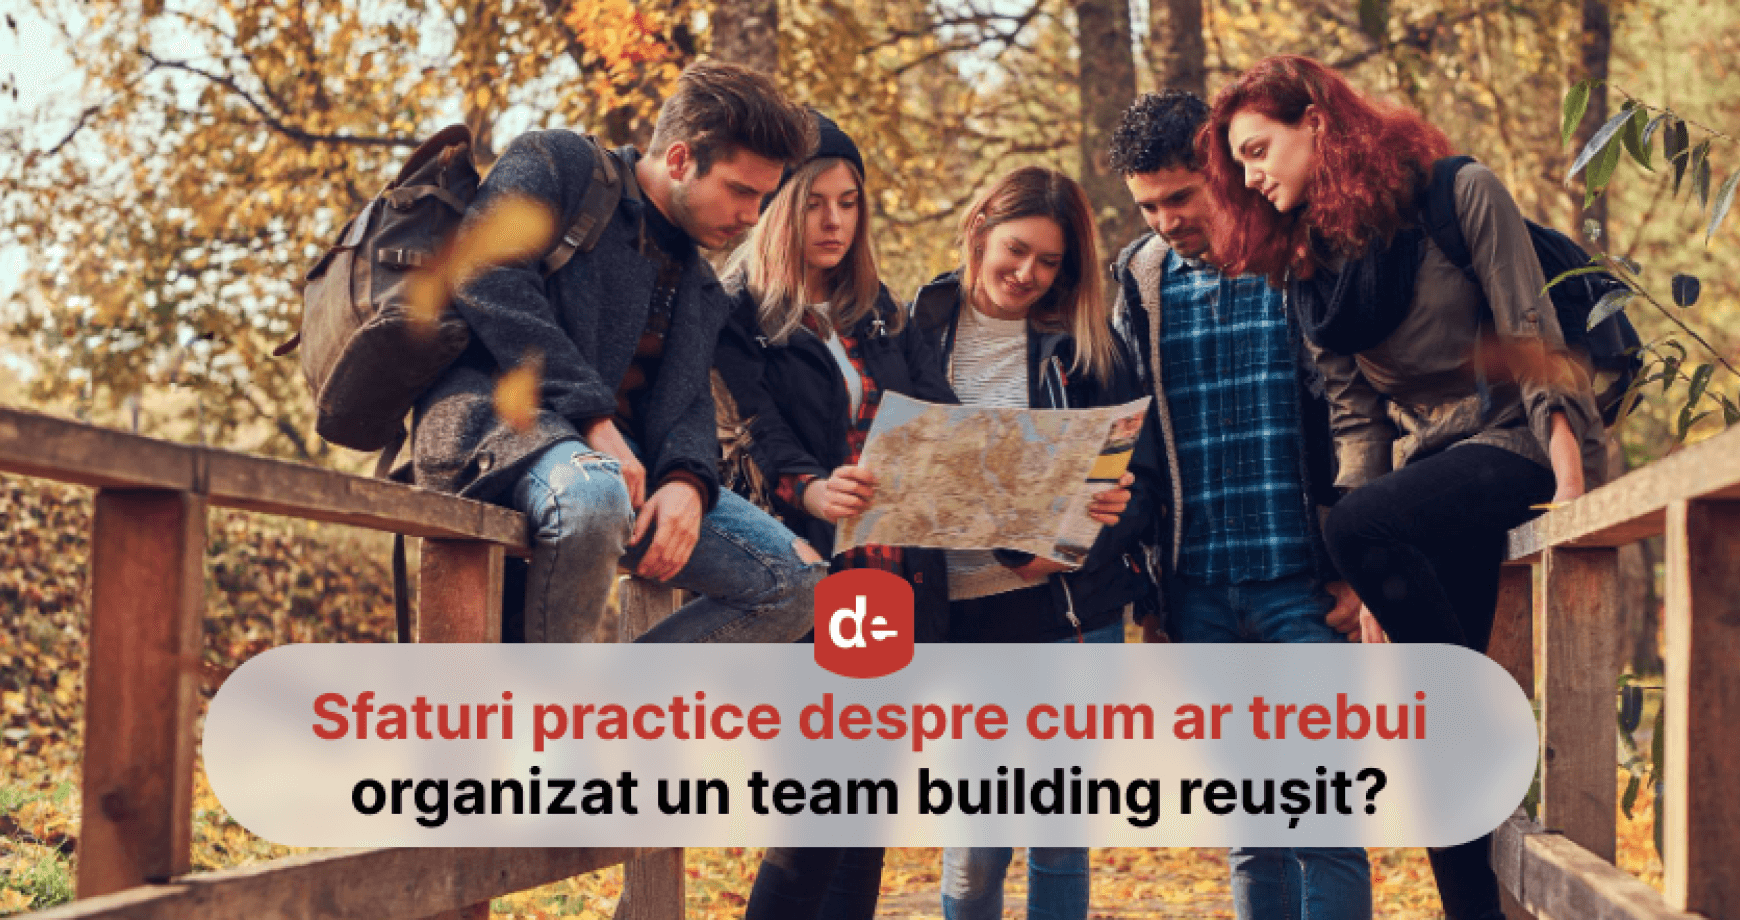 Ce activități ar trebui organizate pentru un team building reușit?